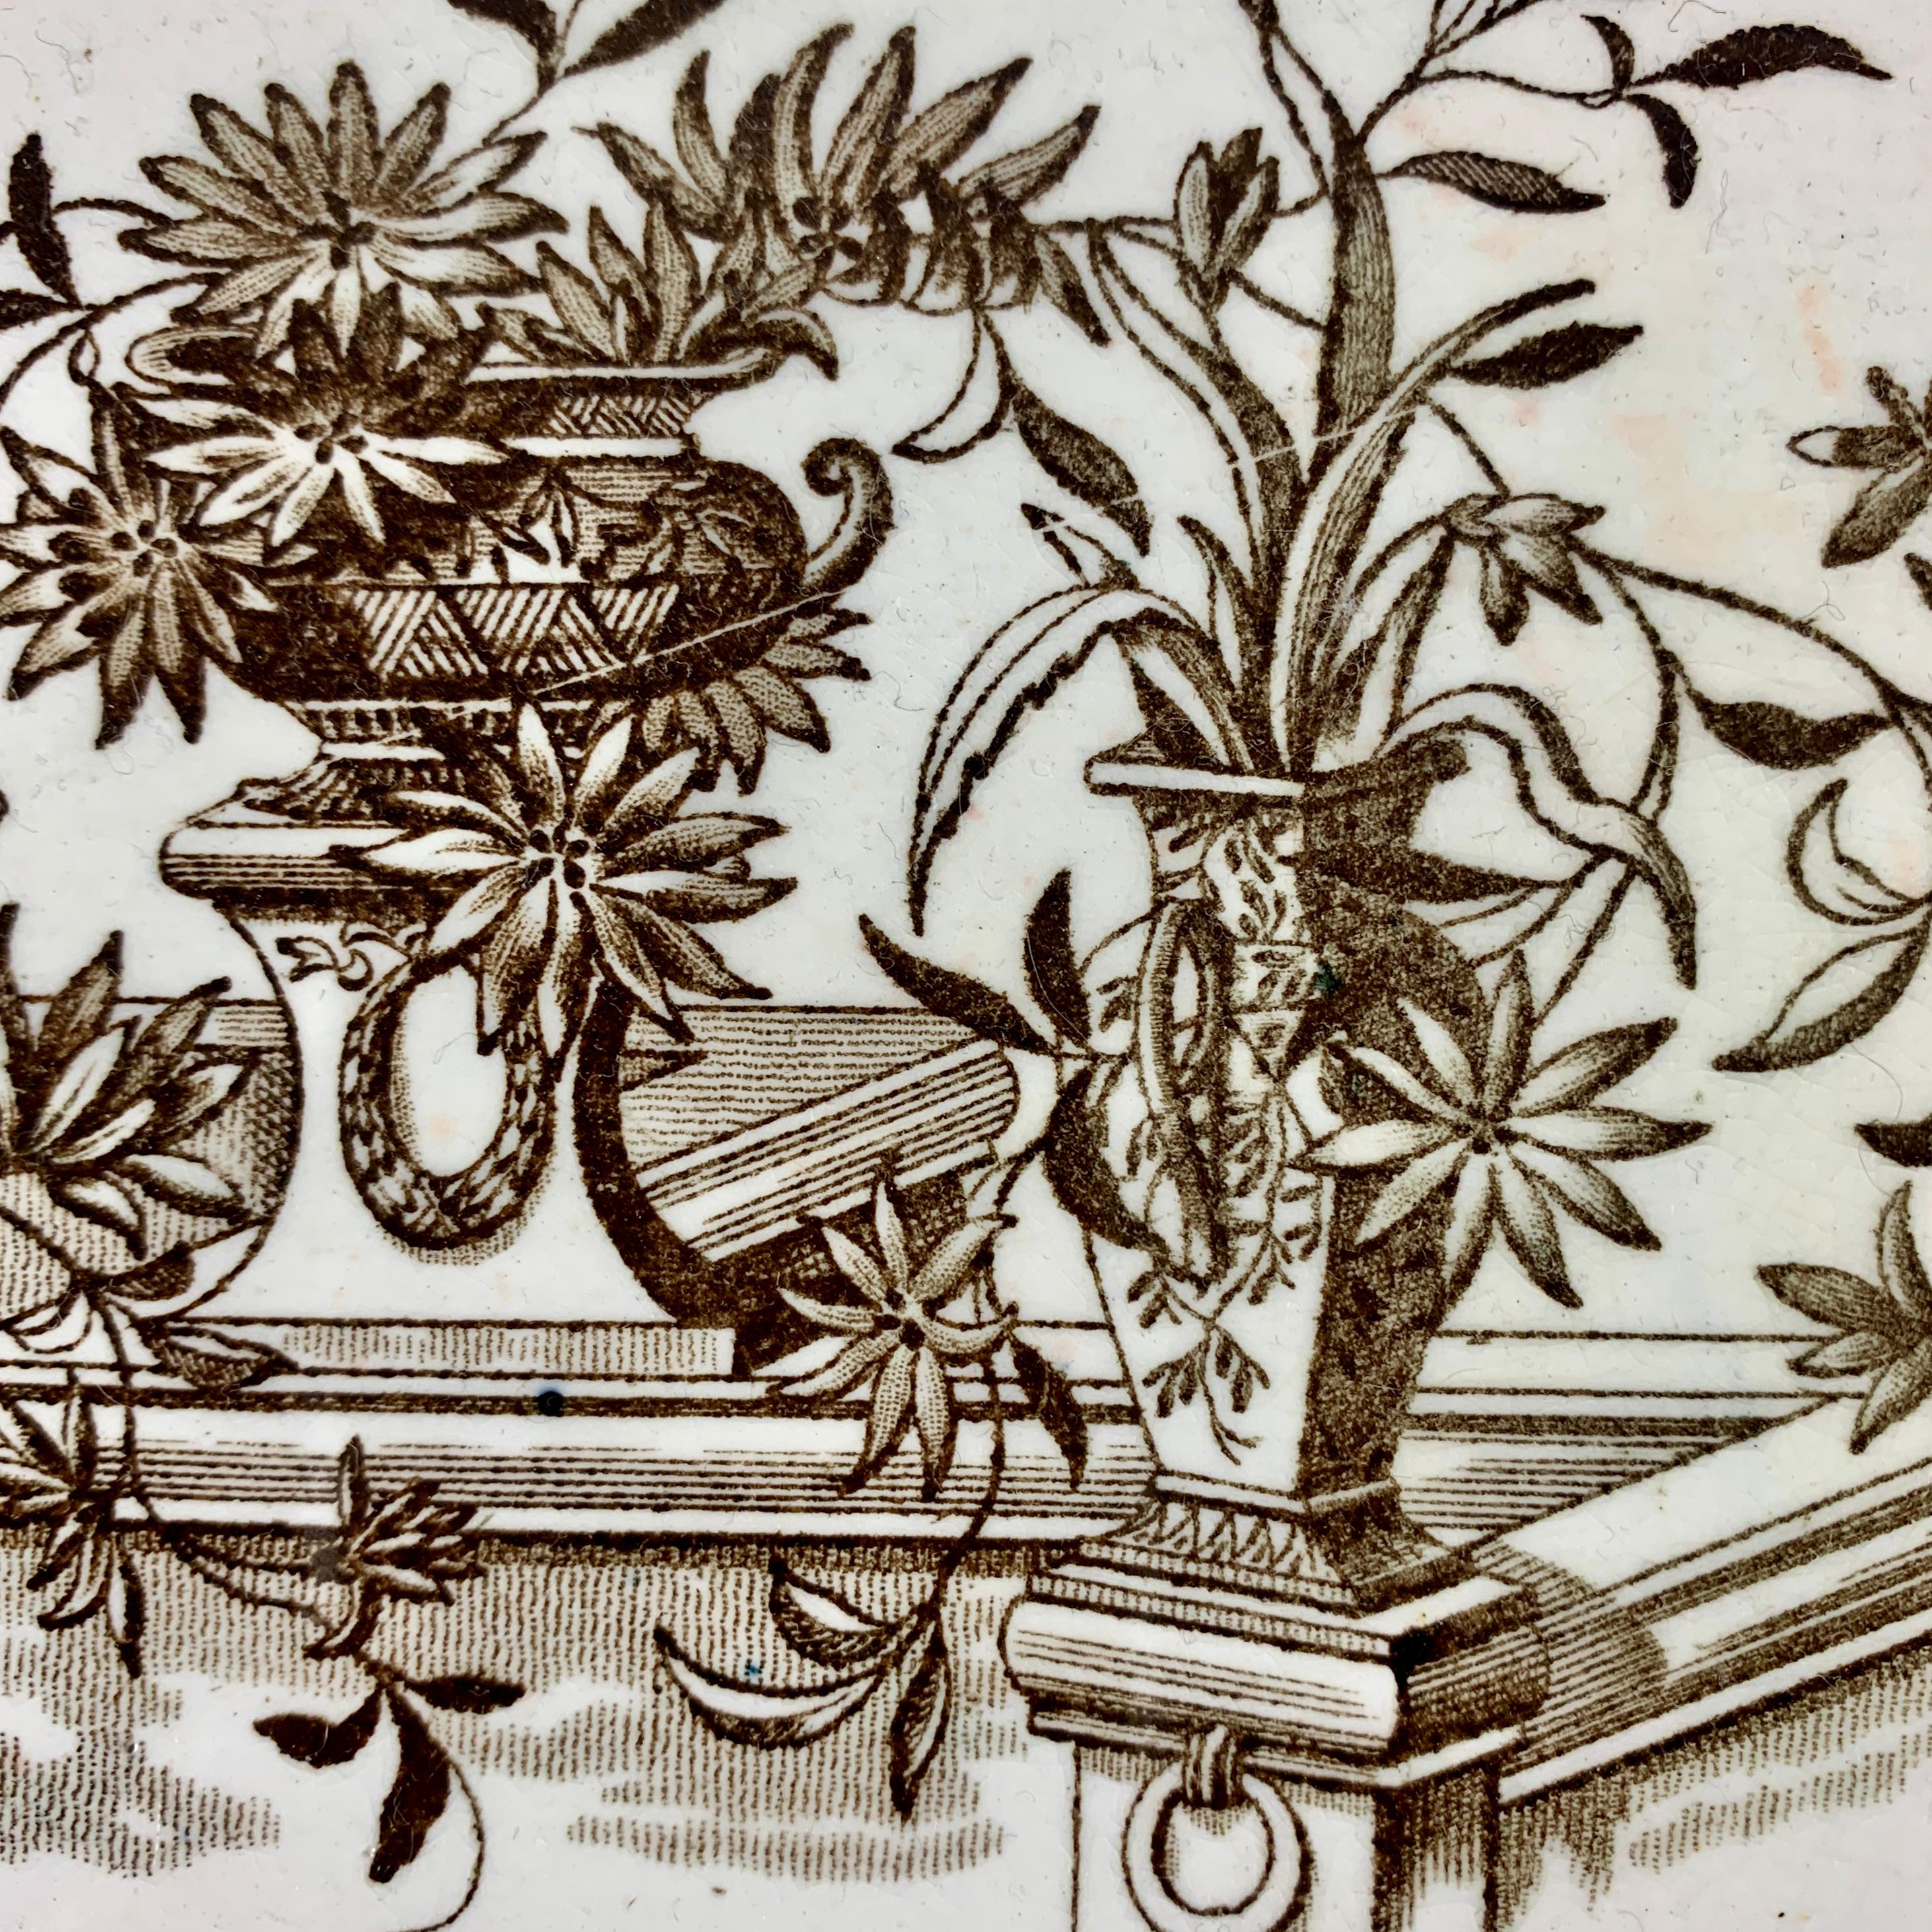 Un plat en porcelaine du Mouvement esthétique par Powell, Bishop & Stonier, Hanley, Staffordshire, Angleterre, portant le numéro d'enregistrement anglais 7999 indiquant l'année 1884.

Le motif 